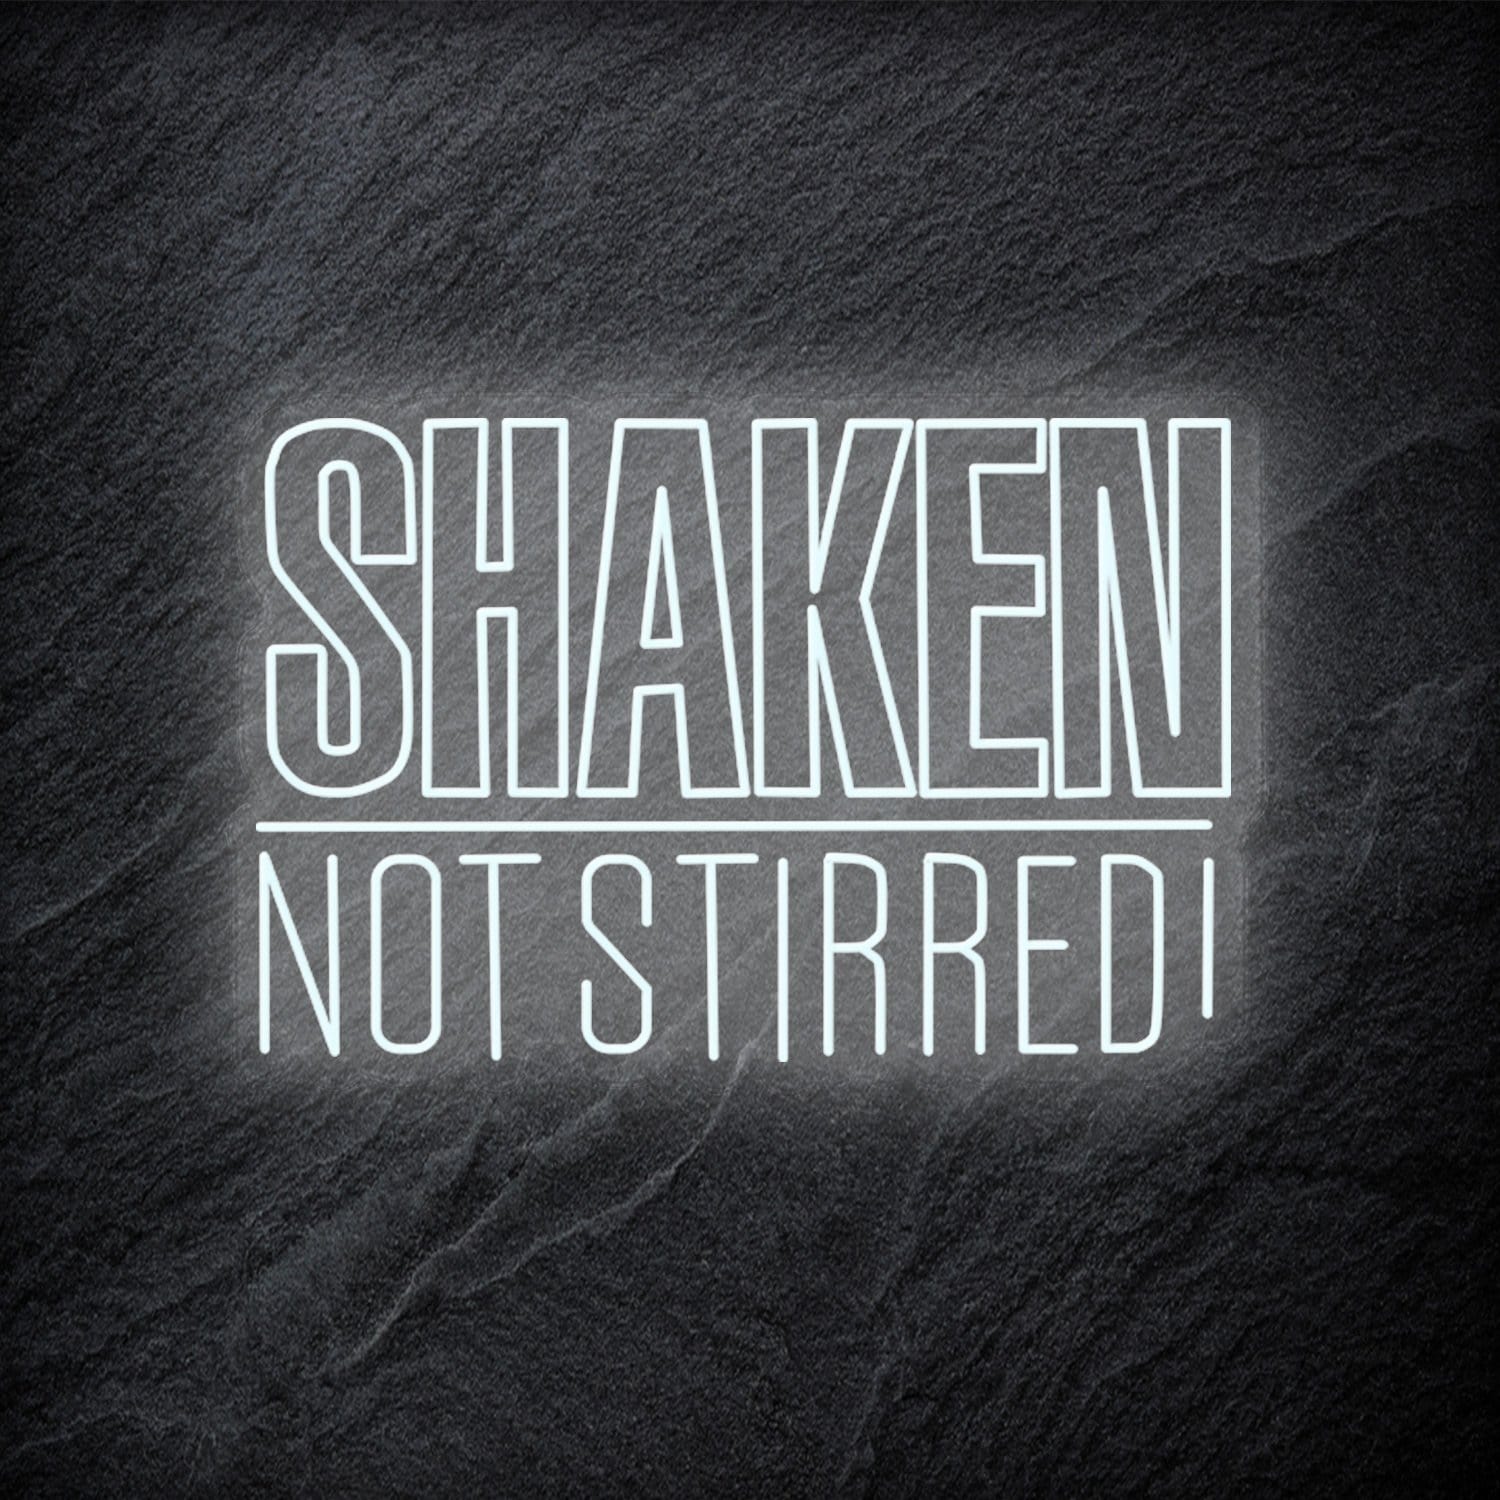 "Shaken Not Stirred" LED Neon Schriftzug - NEONEVERGLOW